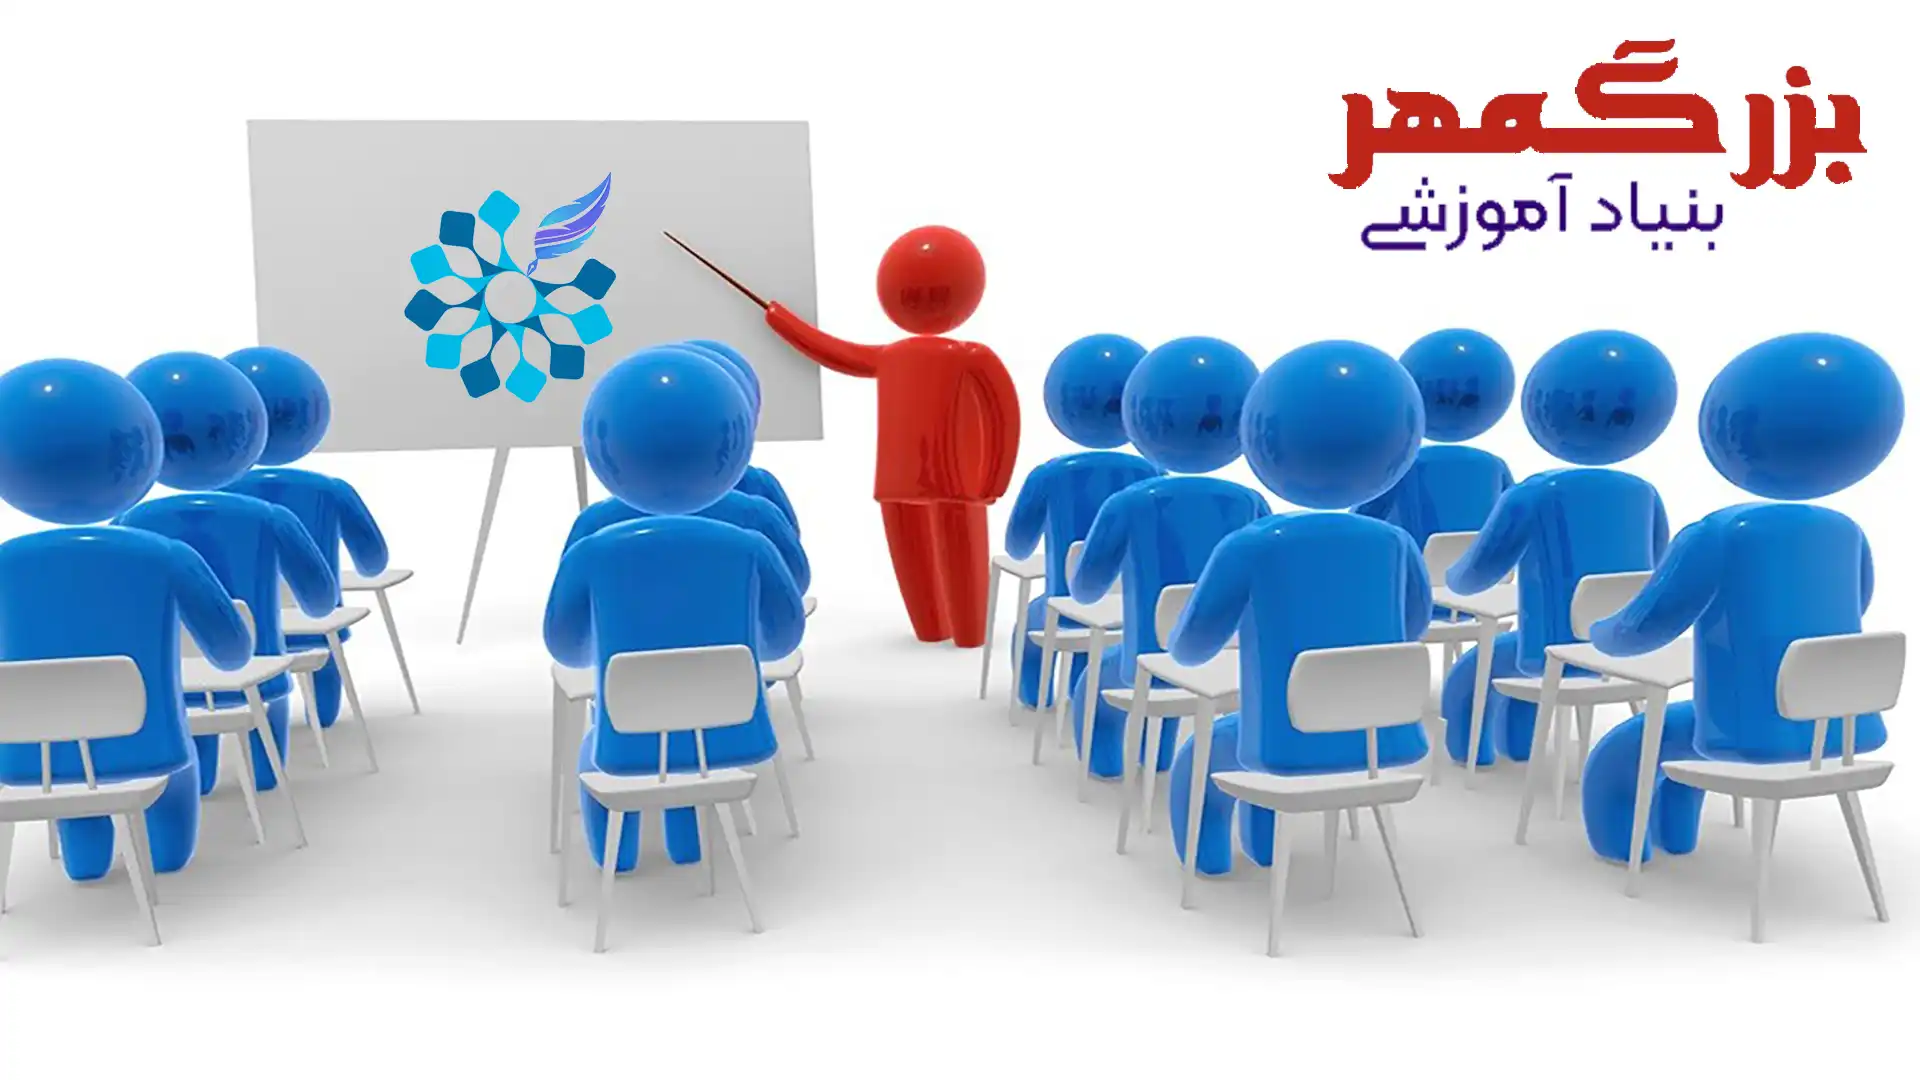 کارگاه ها آموزشی کوتاه مدت فنی و حرفه ای اصفهان